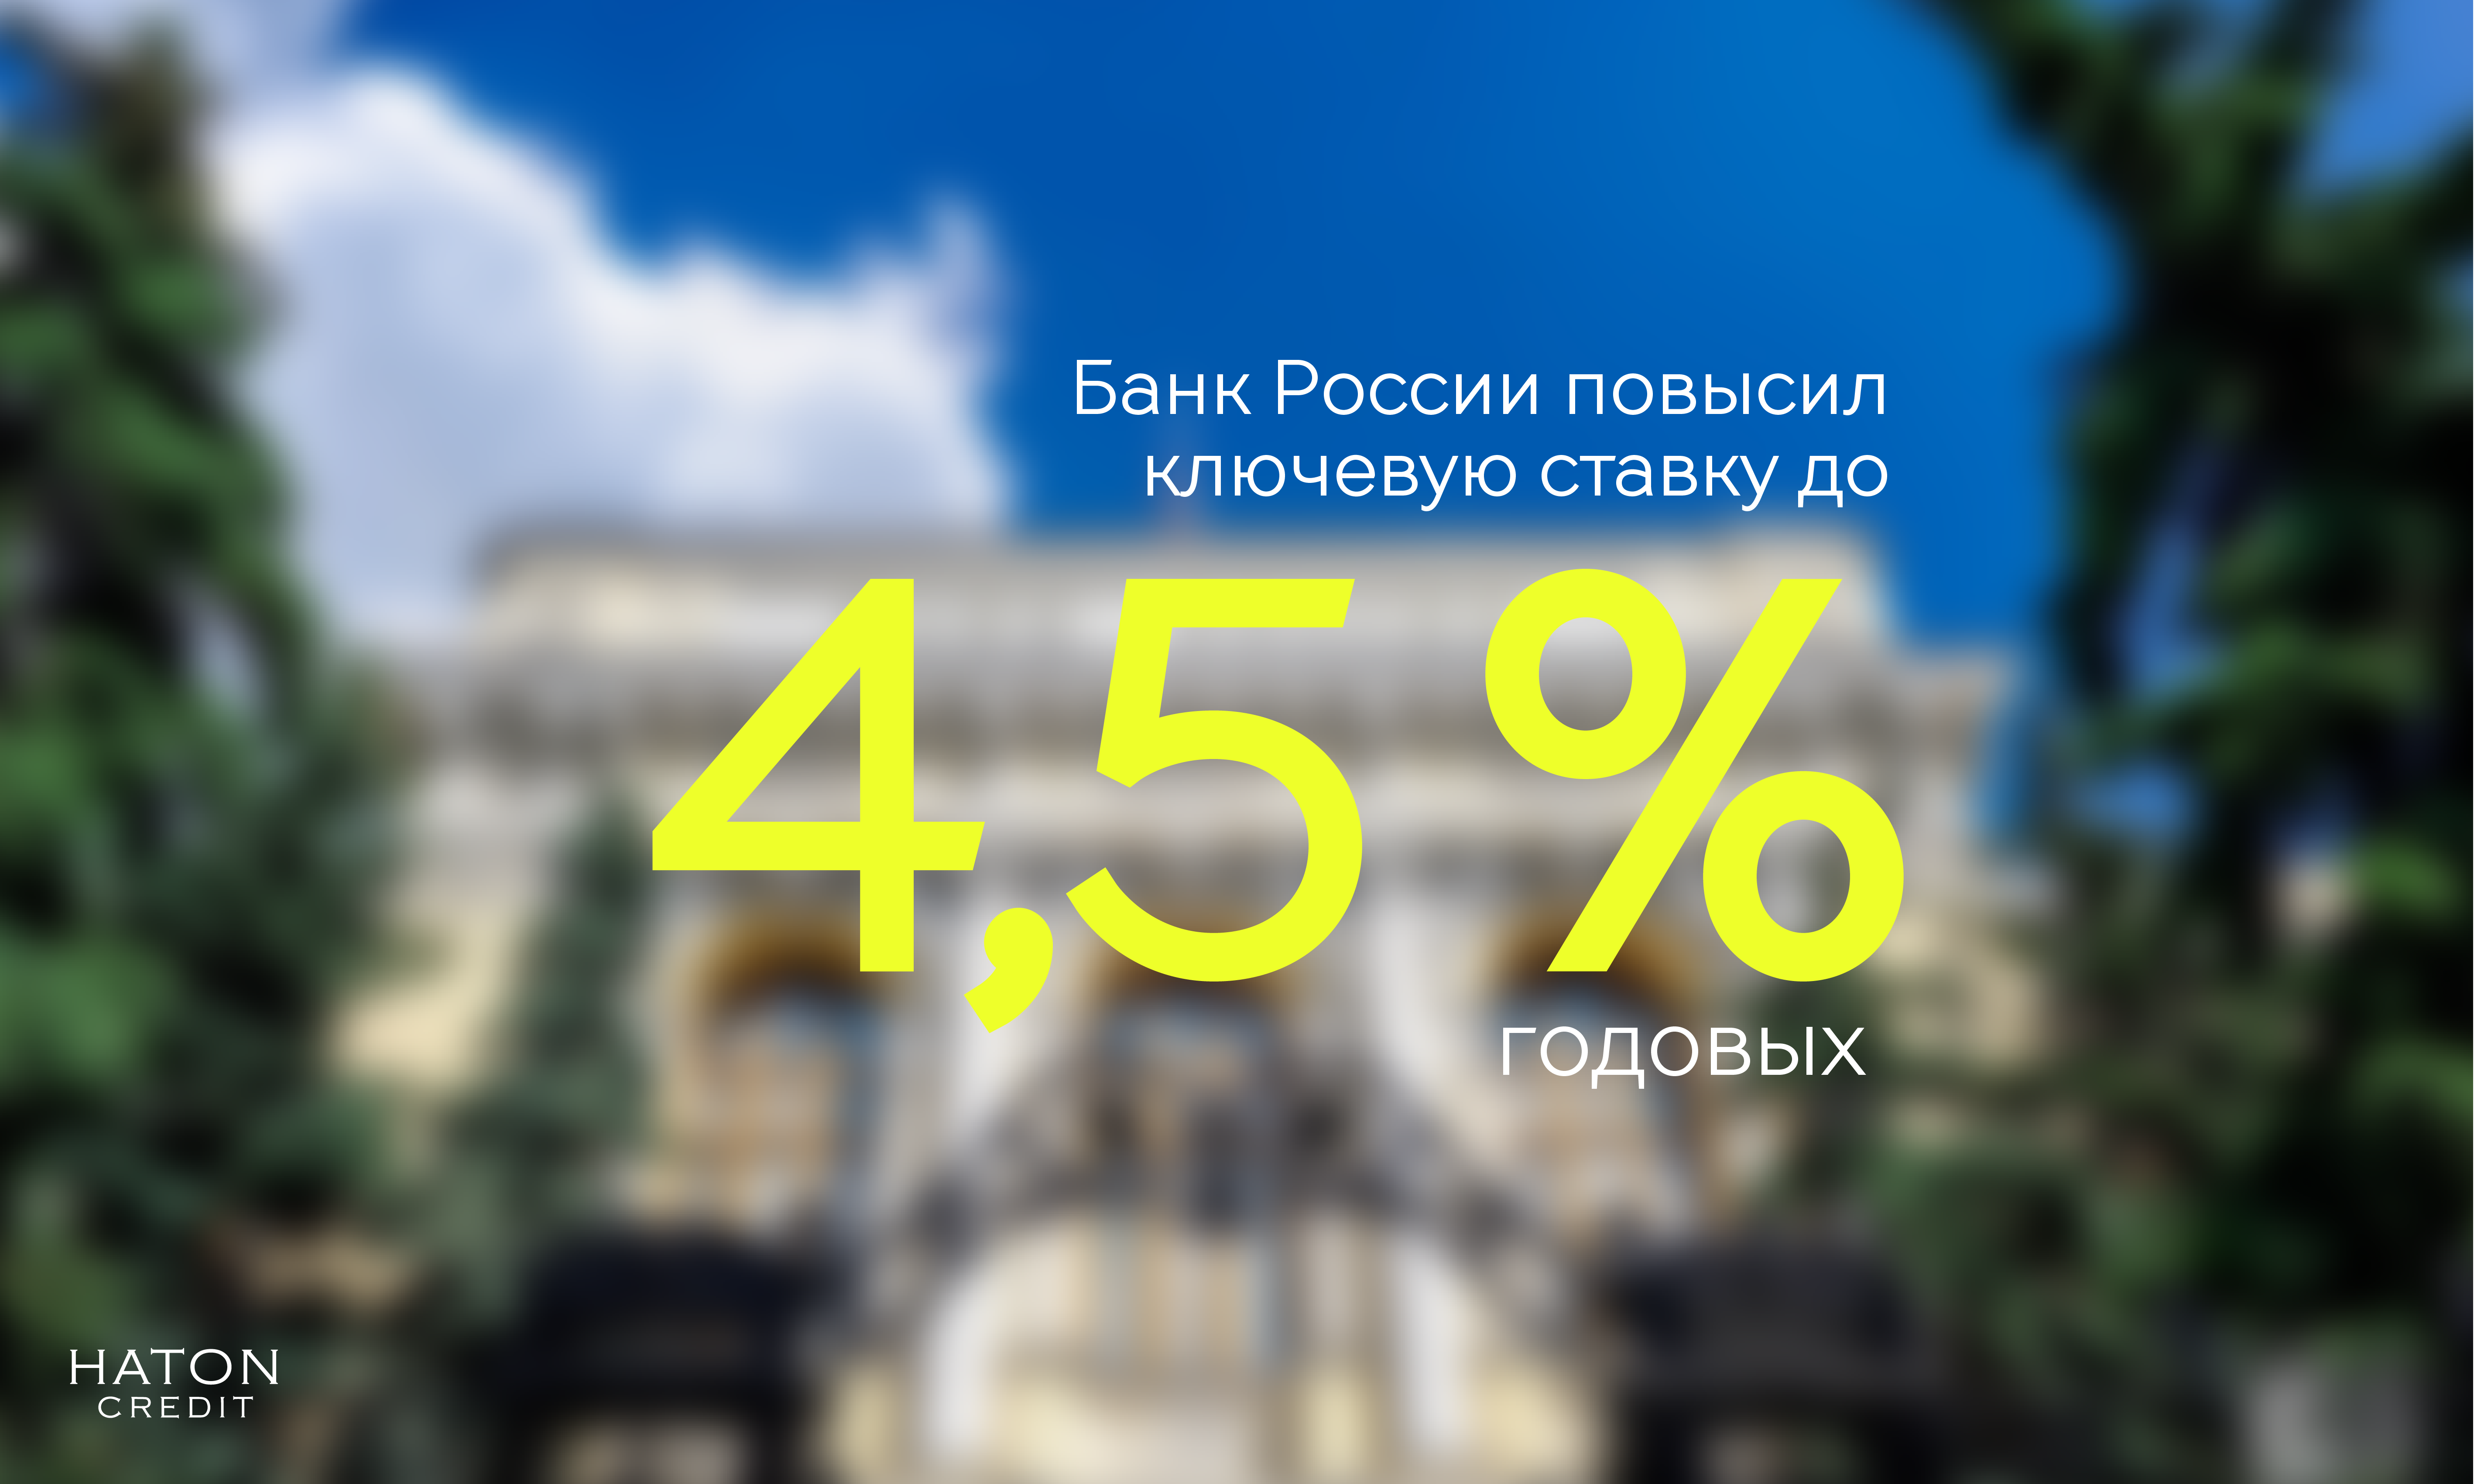 Банк России повысил ключевую ставку до 4,5% годовых.